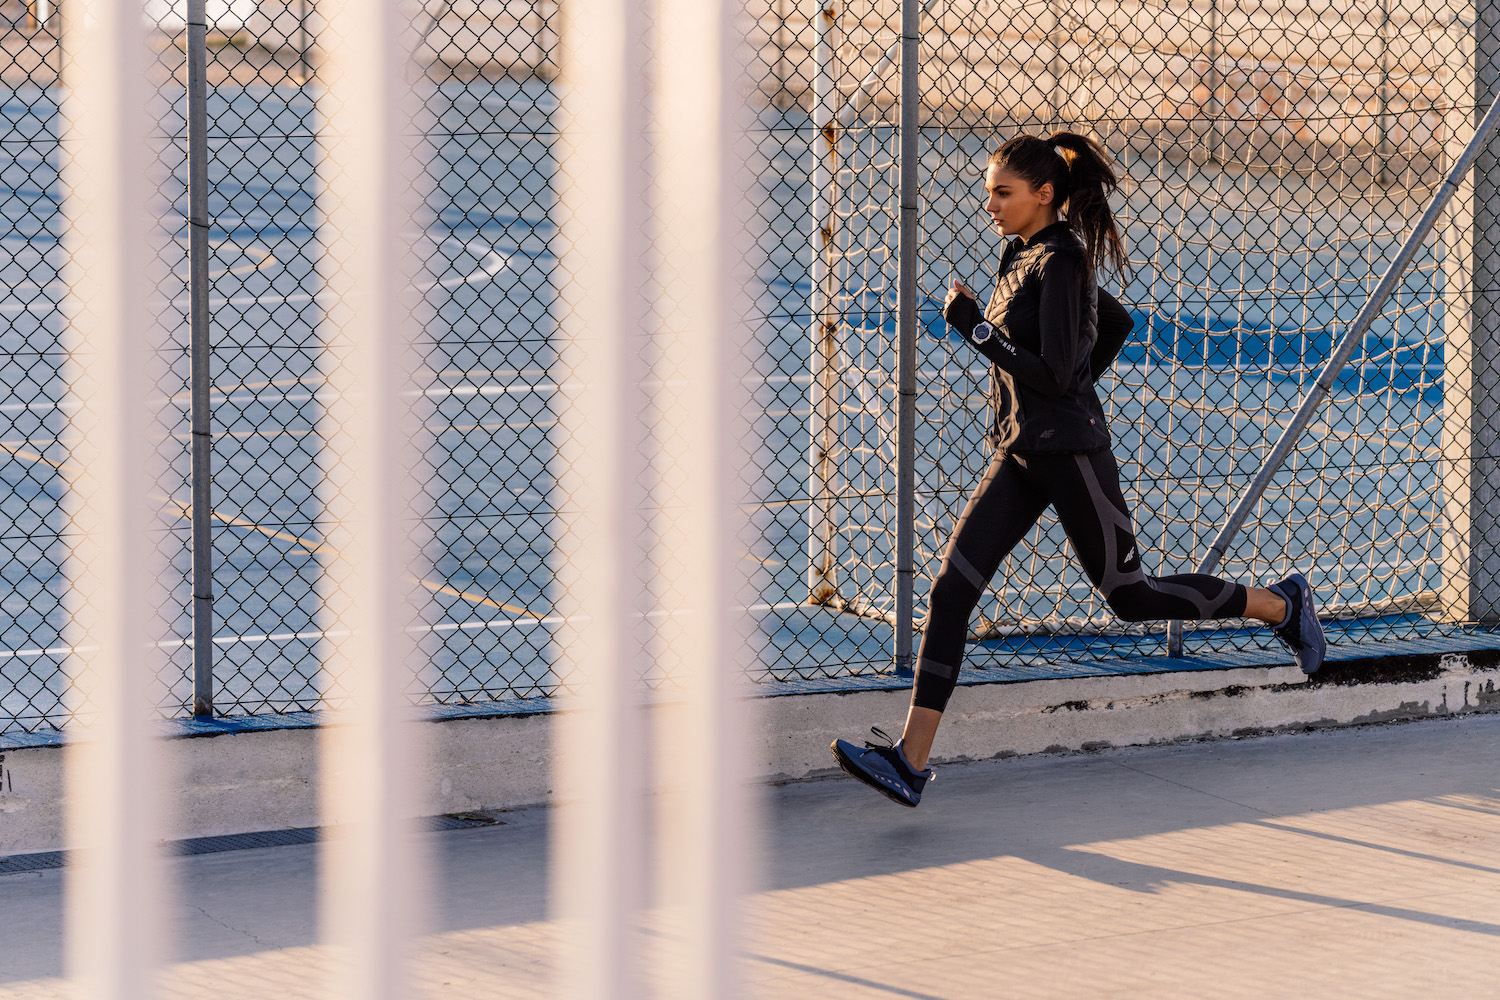 Bėgimas – širdžiai pavojinga sporto rūšis?